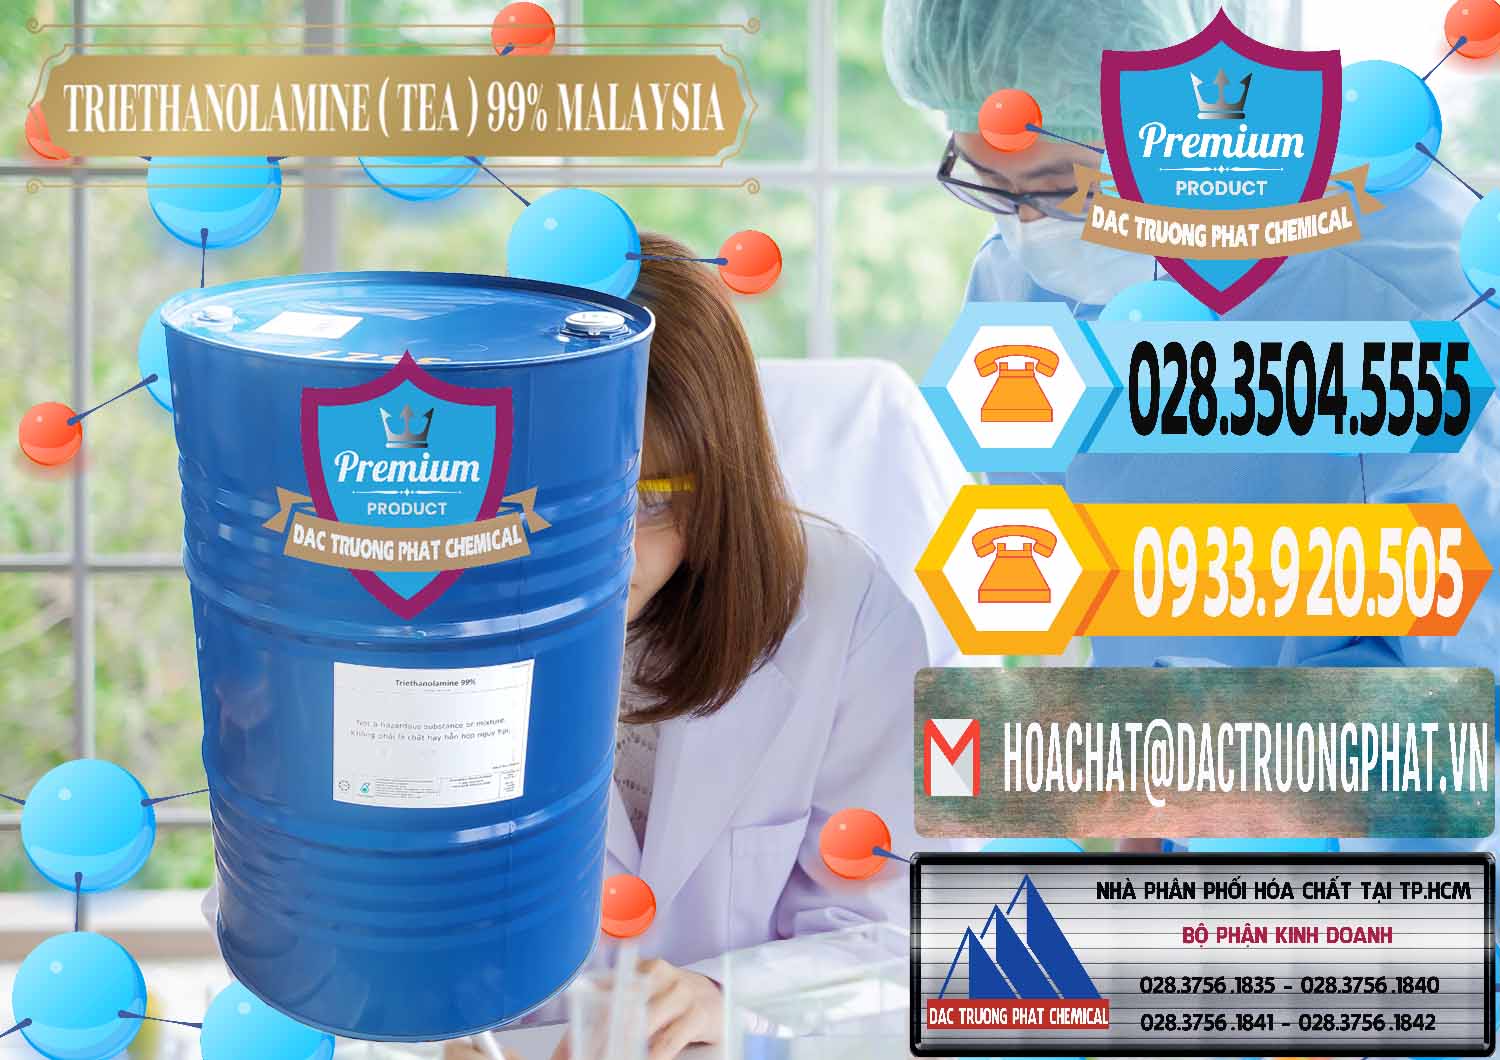 Công ty chuyên bán _ phân phối TEA - Triethanolamine 99% Mã Lai Malaysia - 0323 - Nơi cung cấp & kinh doanh hóa chất tại TP.HCM - hoachattayrua.net